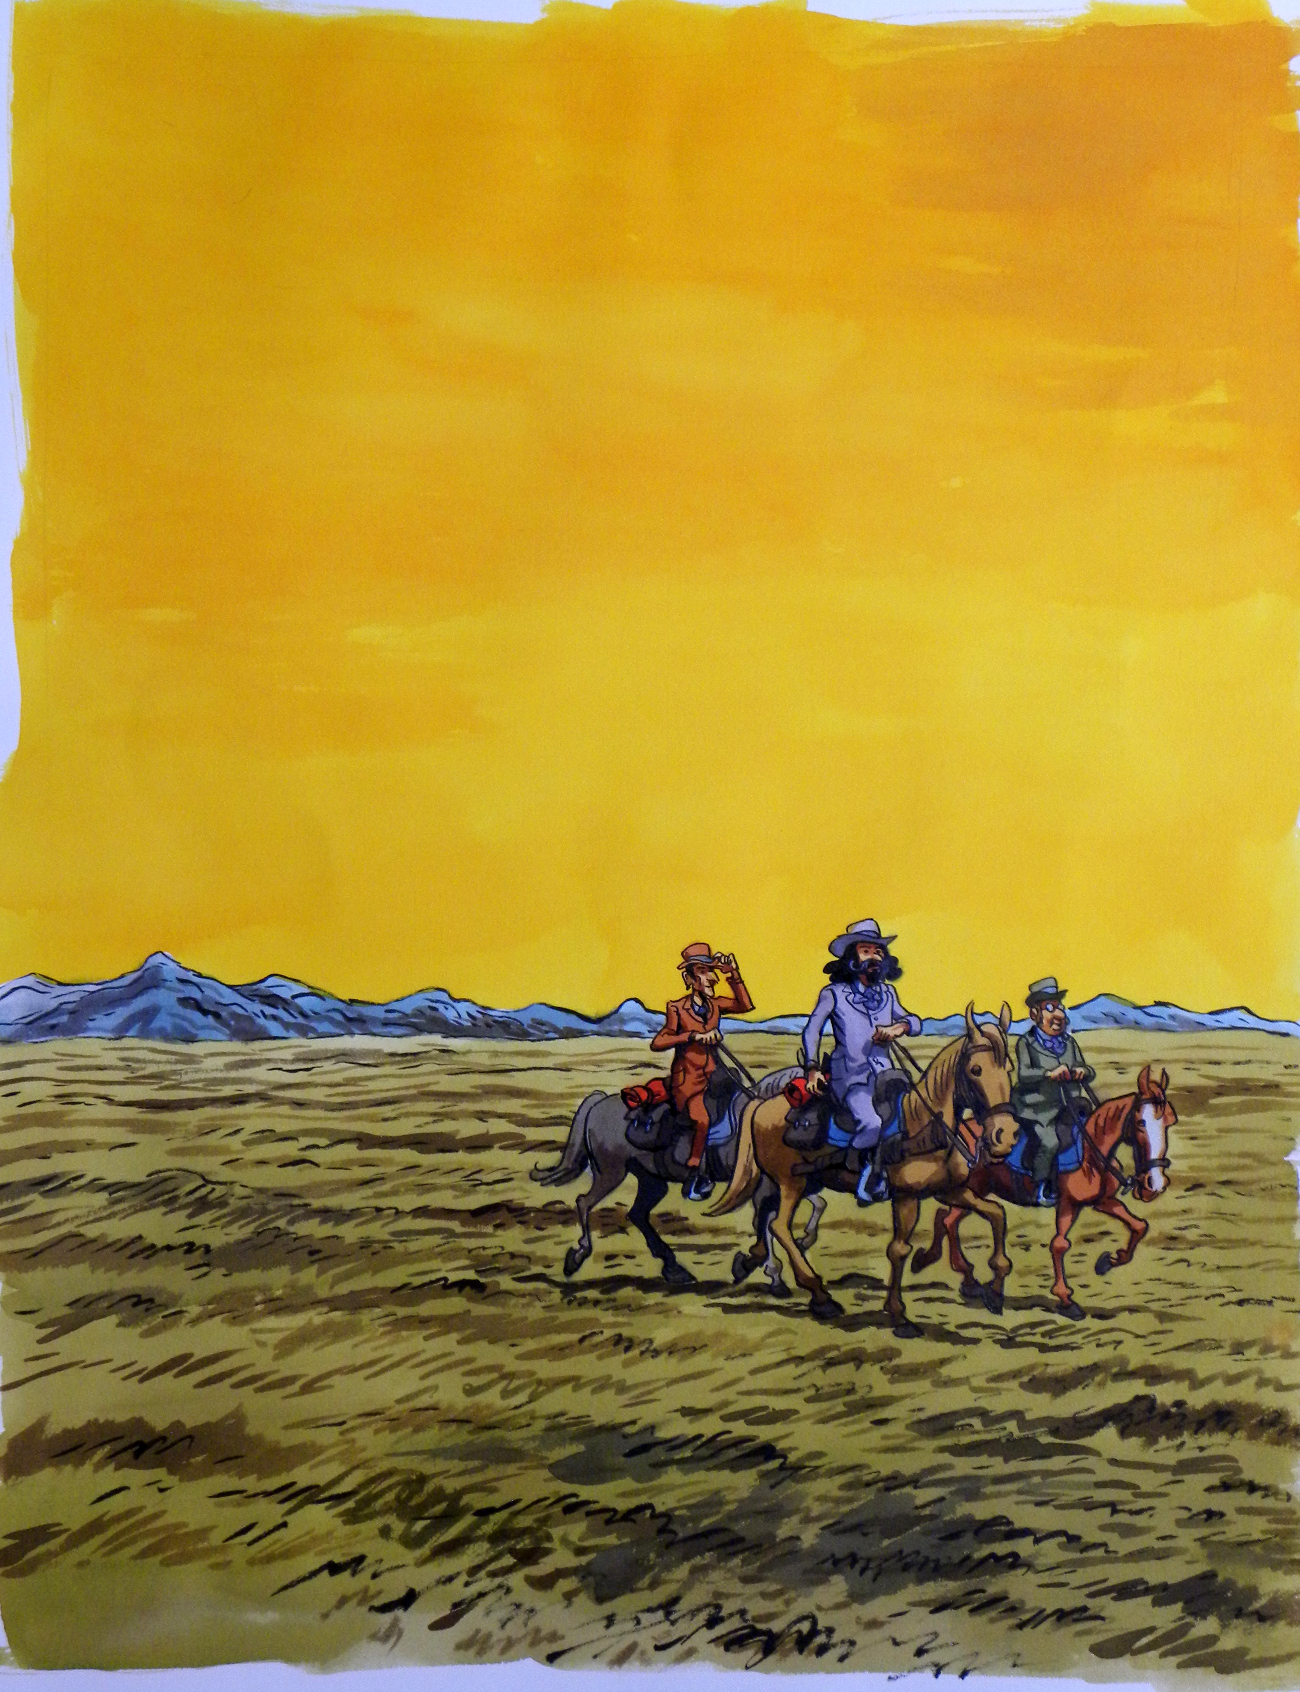 En vente - Le Roi des Mapuche – Couverture – Nicolas dumontheuil par Nicolas Dumontheuil, Christophe Dabitch - Couverture originale